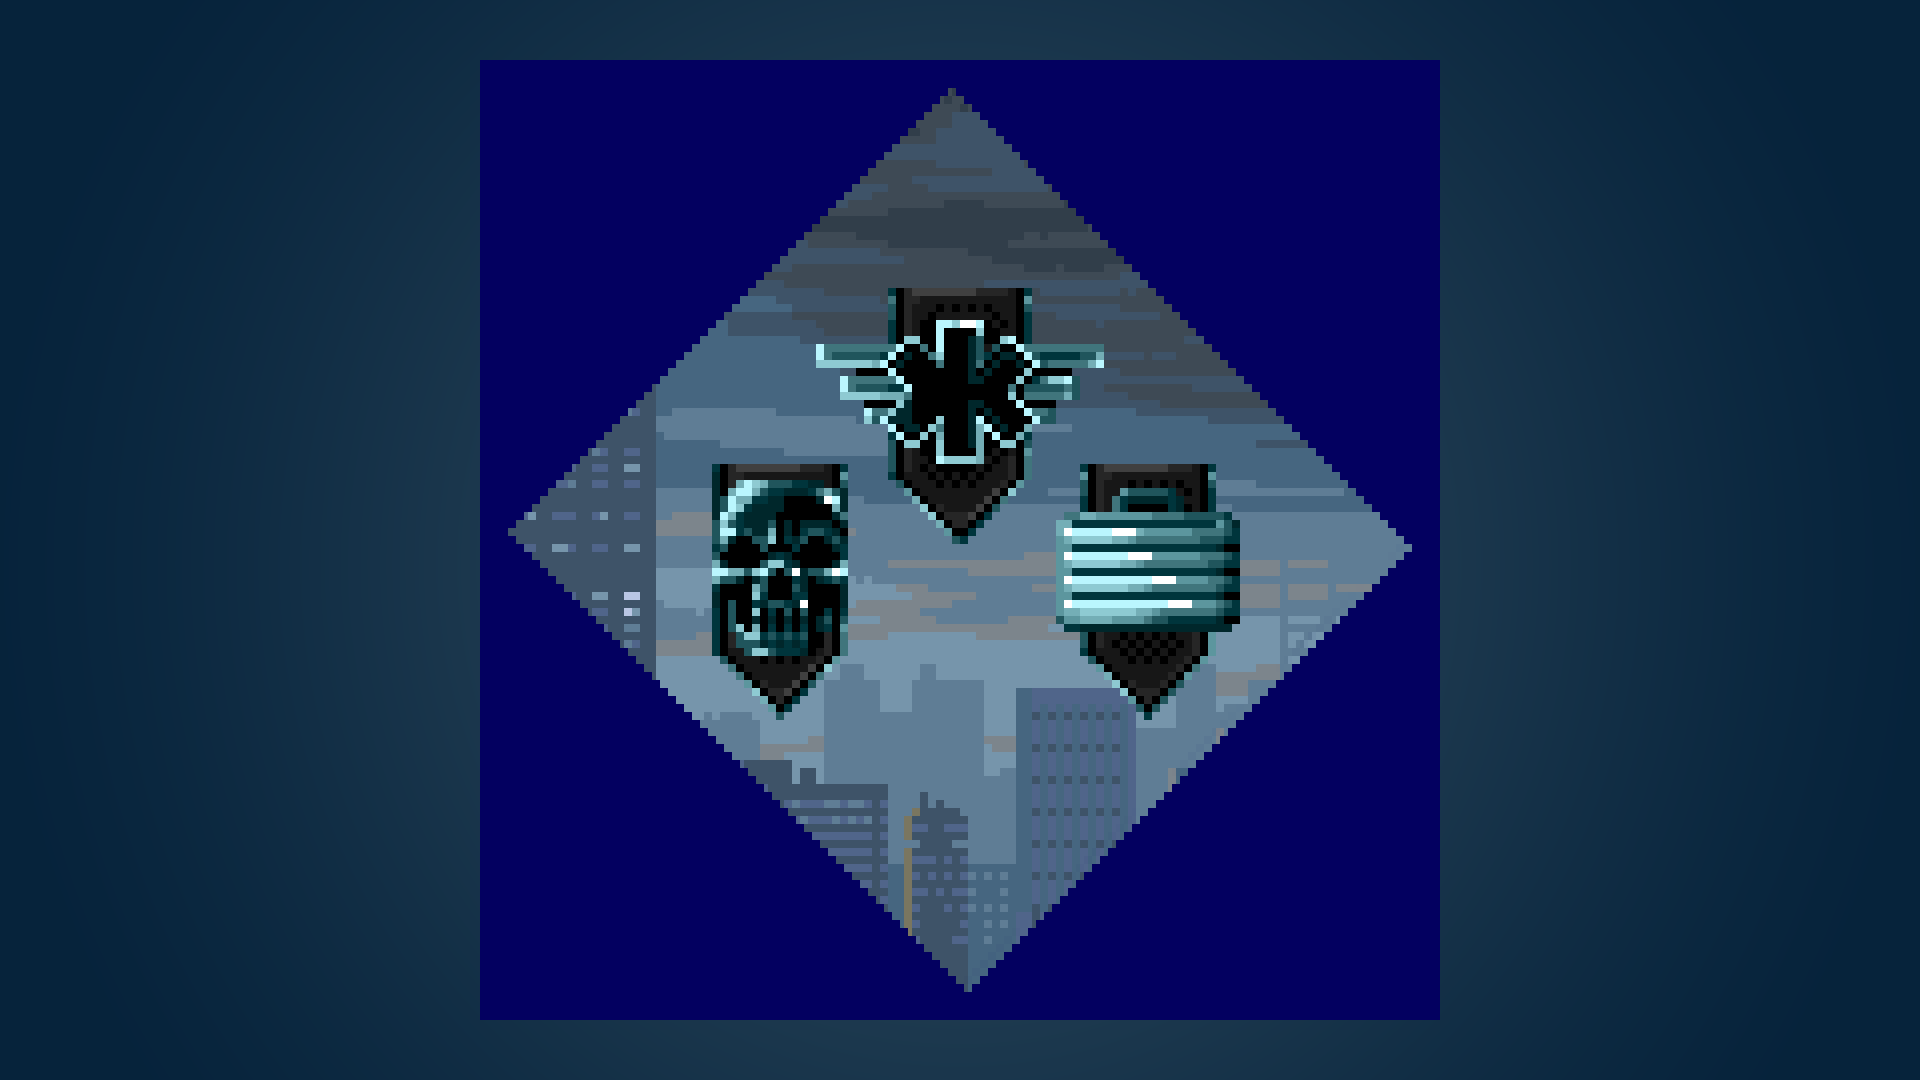 Icon for Mercenary